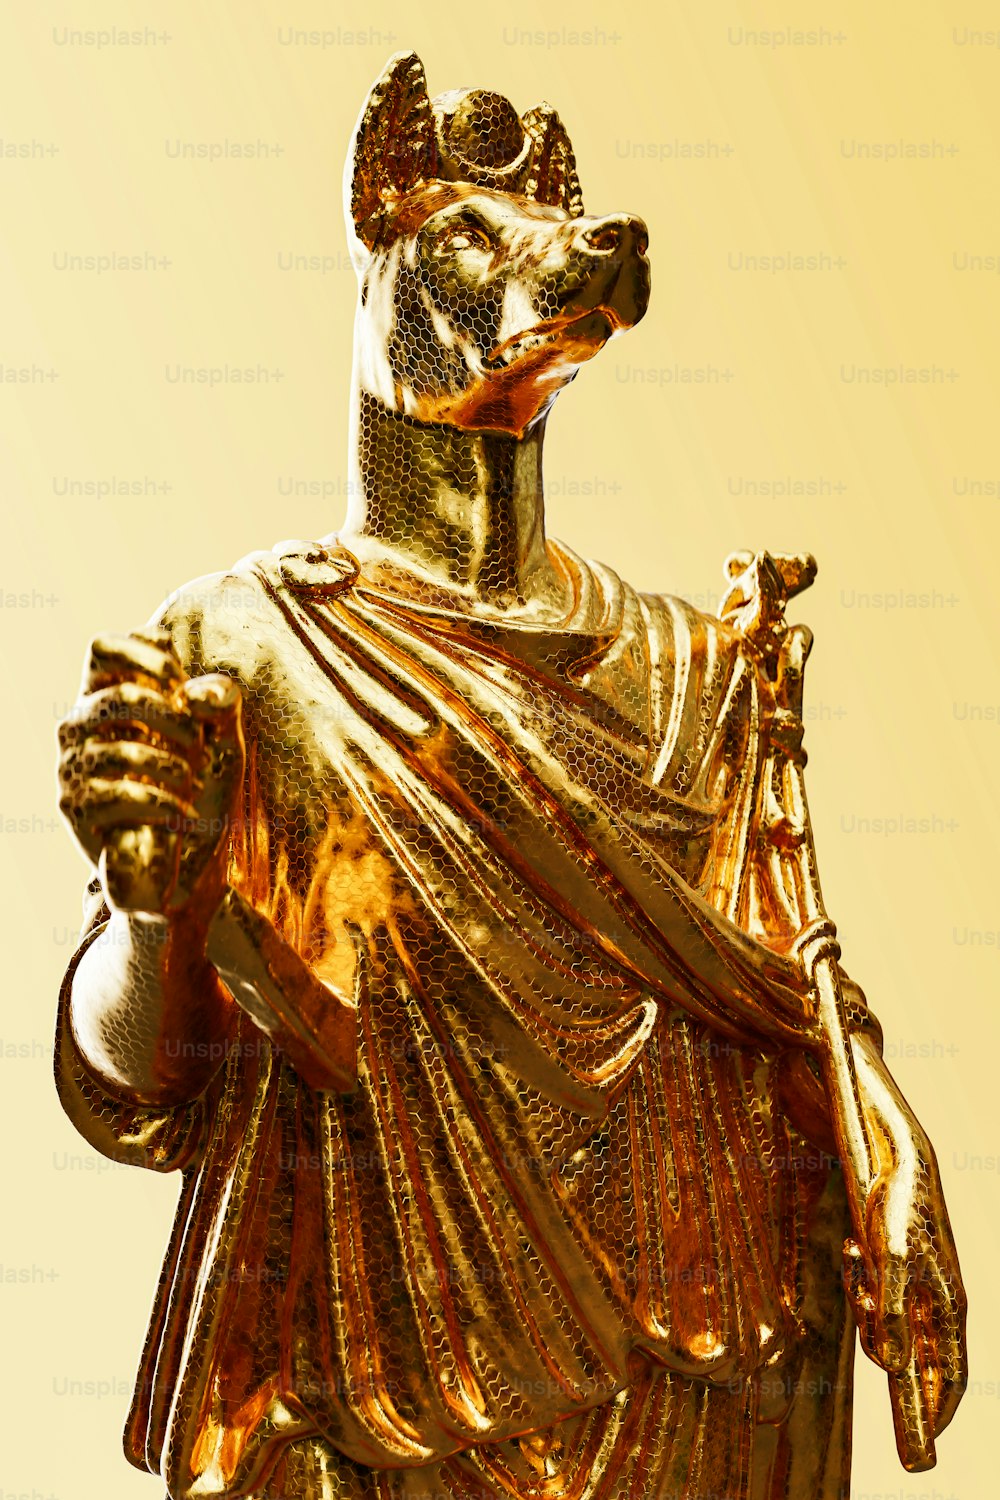 Eine goldene Statue eines Mannes mit einer Krone auf dem Kopf